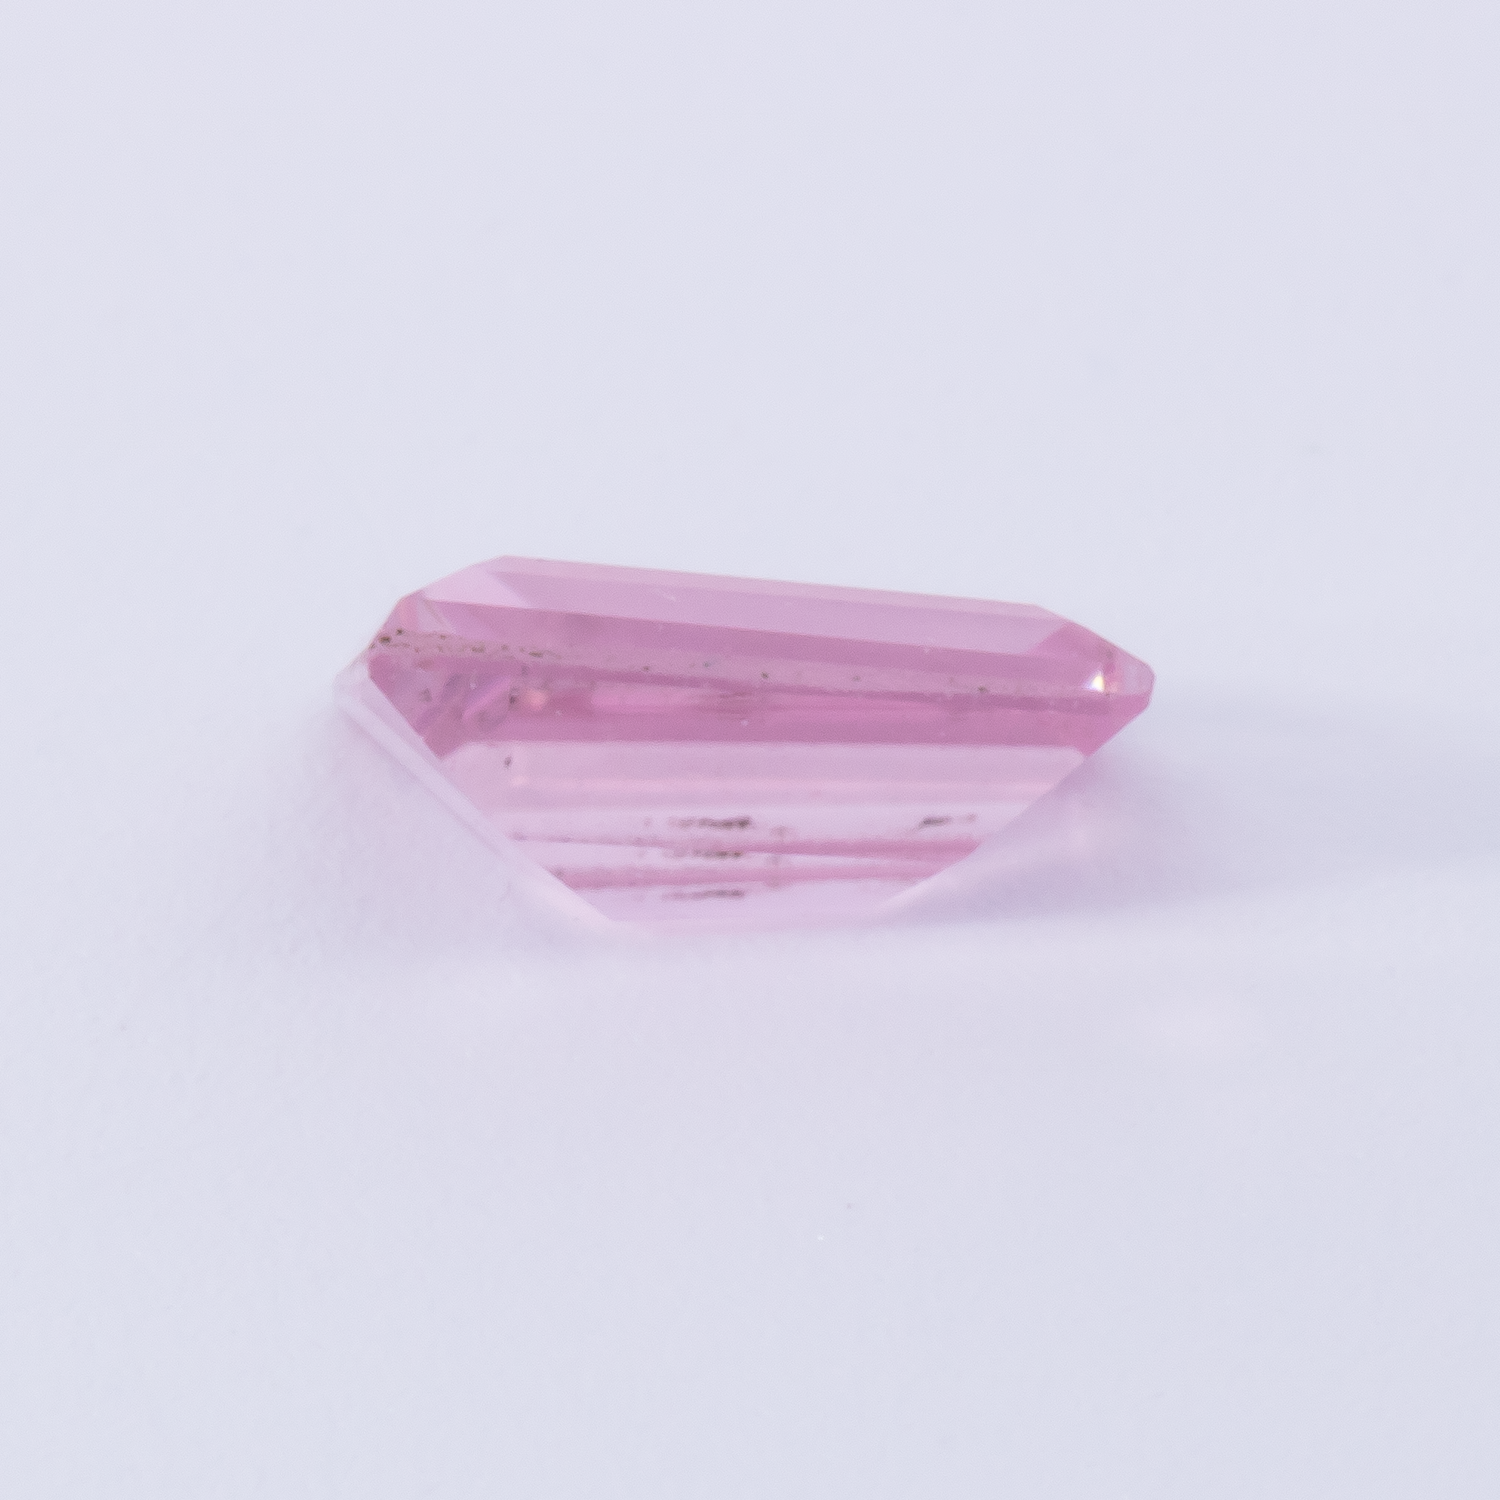 Turmalin - rosa, fancy, 5.1x4 mm, 0.31 cts, Nr. TR991082